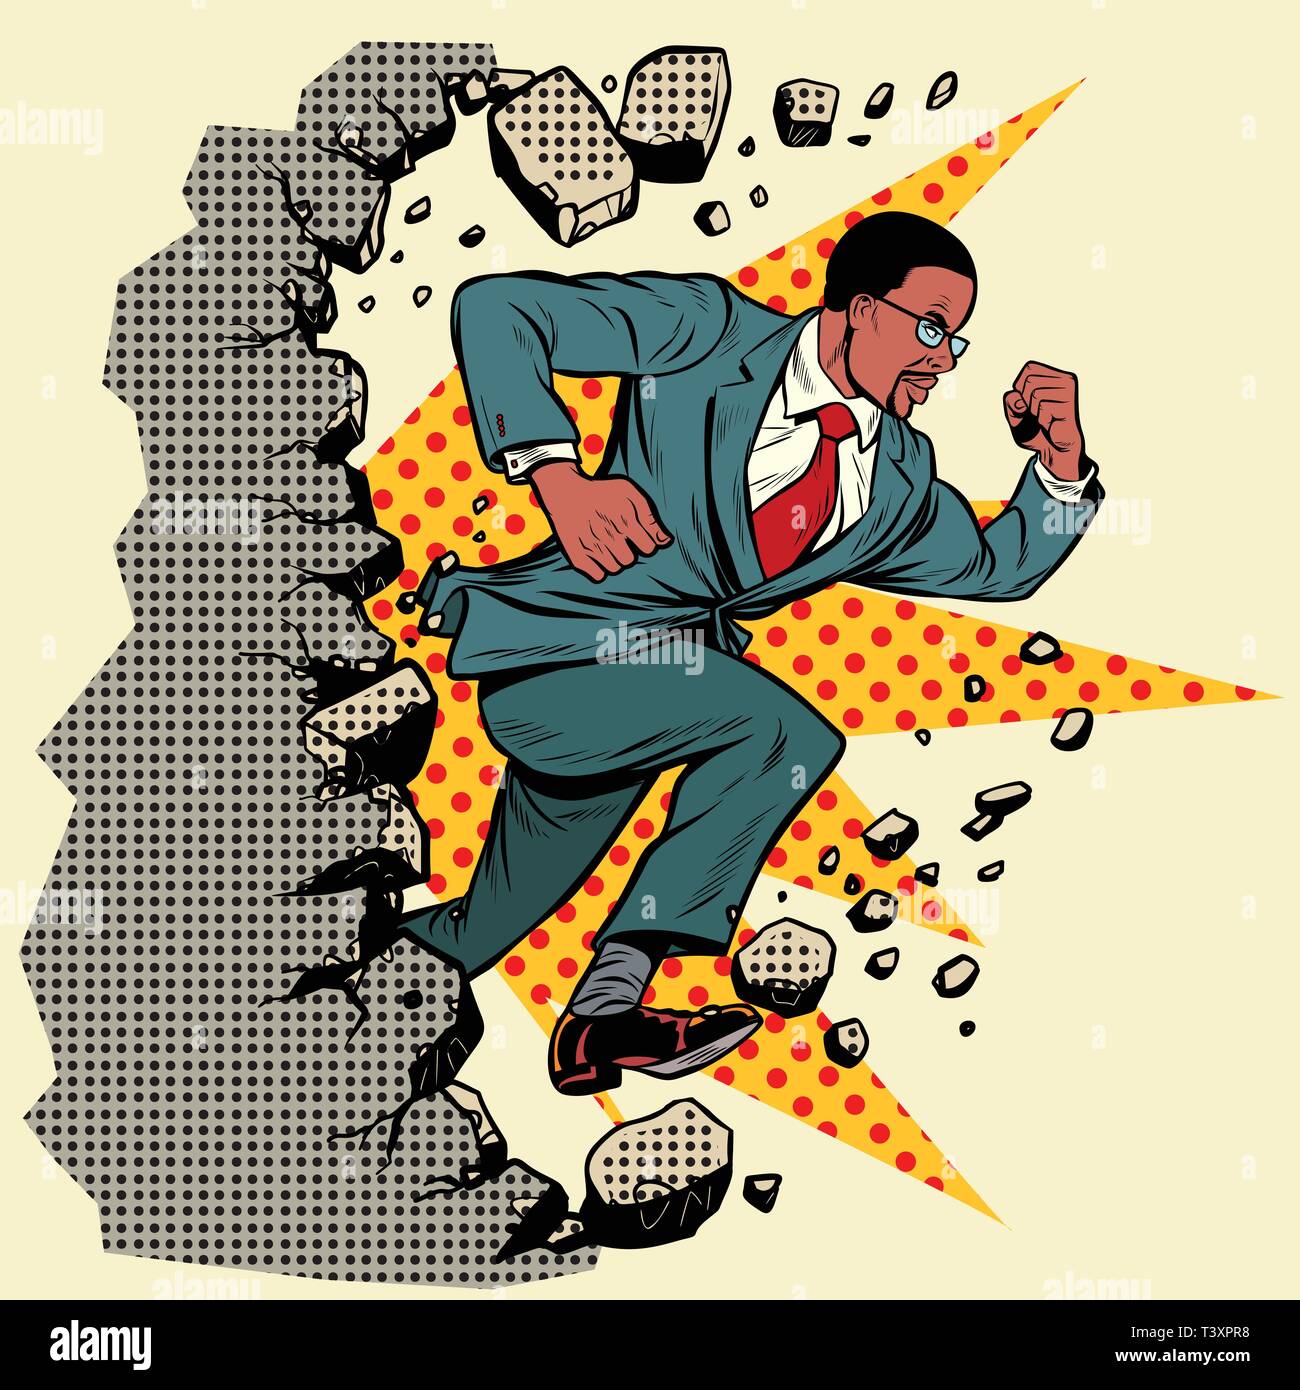 Leader afrikanischen Geschäftsmann bricht eine Mauer, zerstört die Stereotypen. Vorwärts bewegen, persönliche Entwicklung. Pop Art retro Vektor illustration Vintage kitsch Stock Vektor